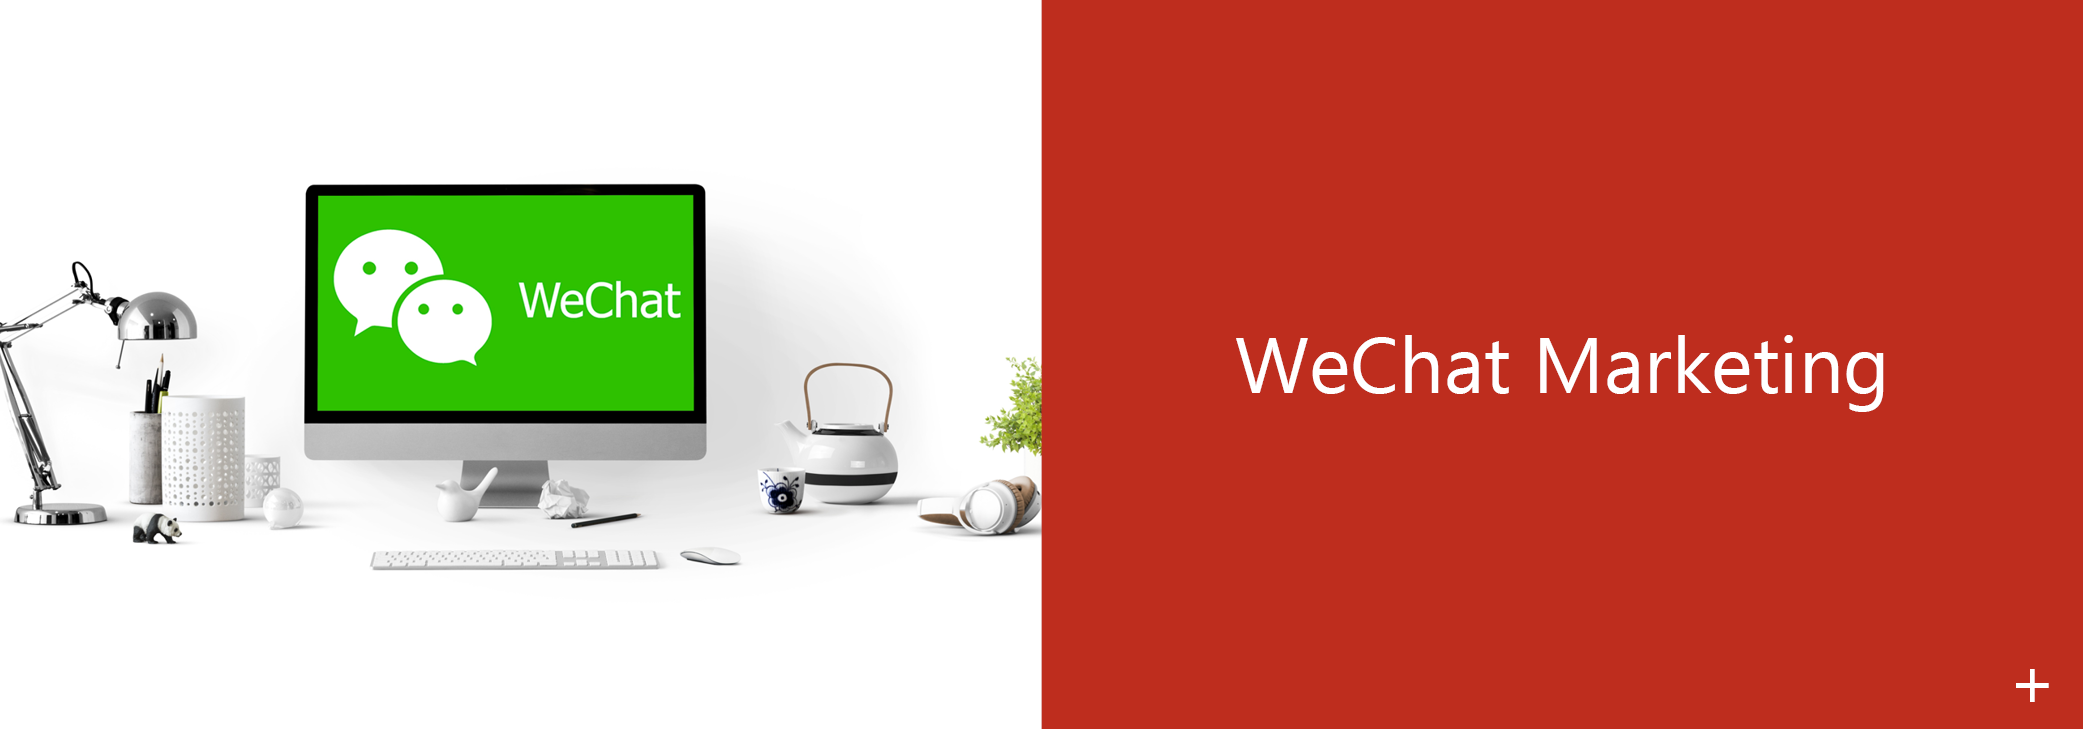 WeChat logo on a Monitor / Wechat Logo auf einem Monitor